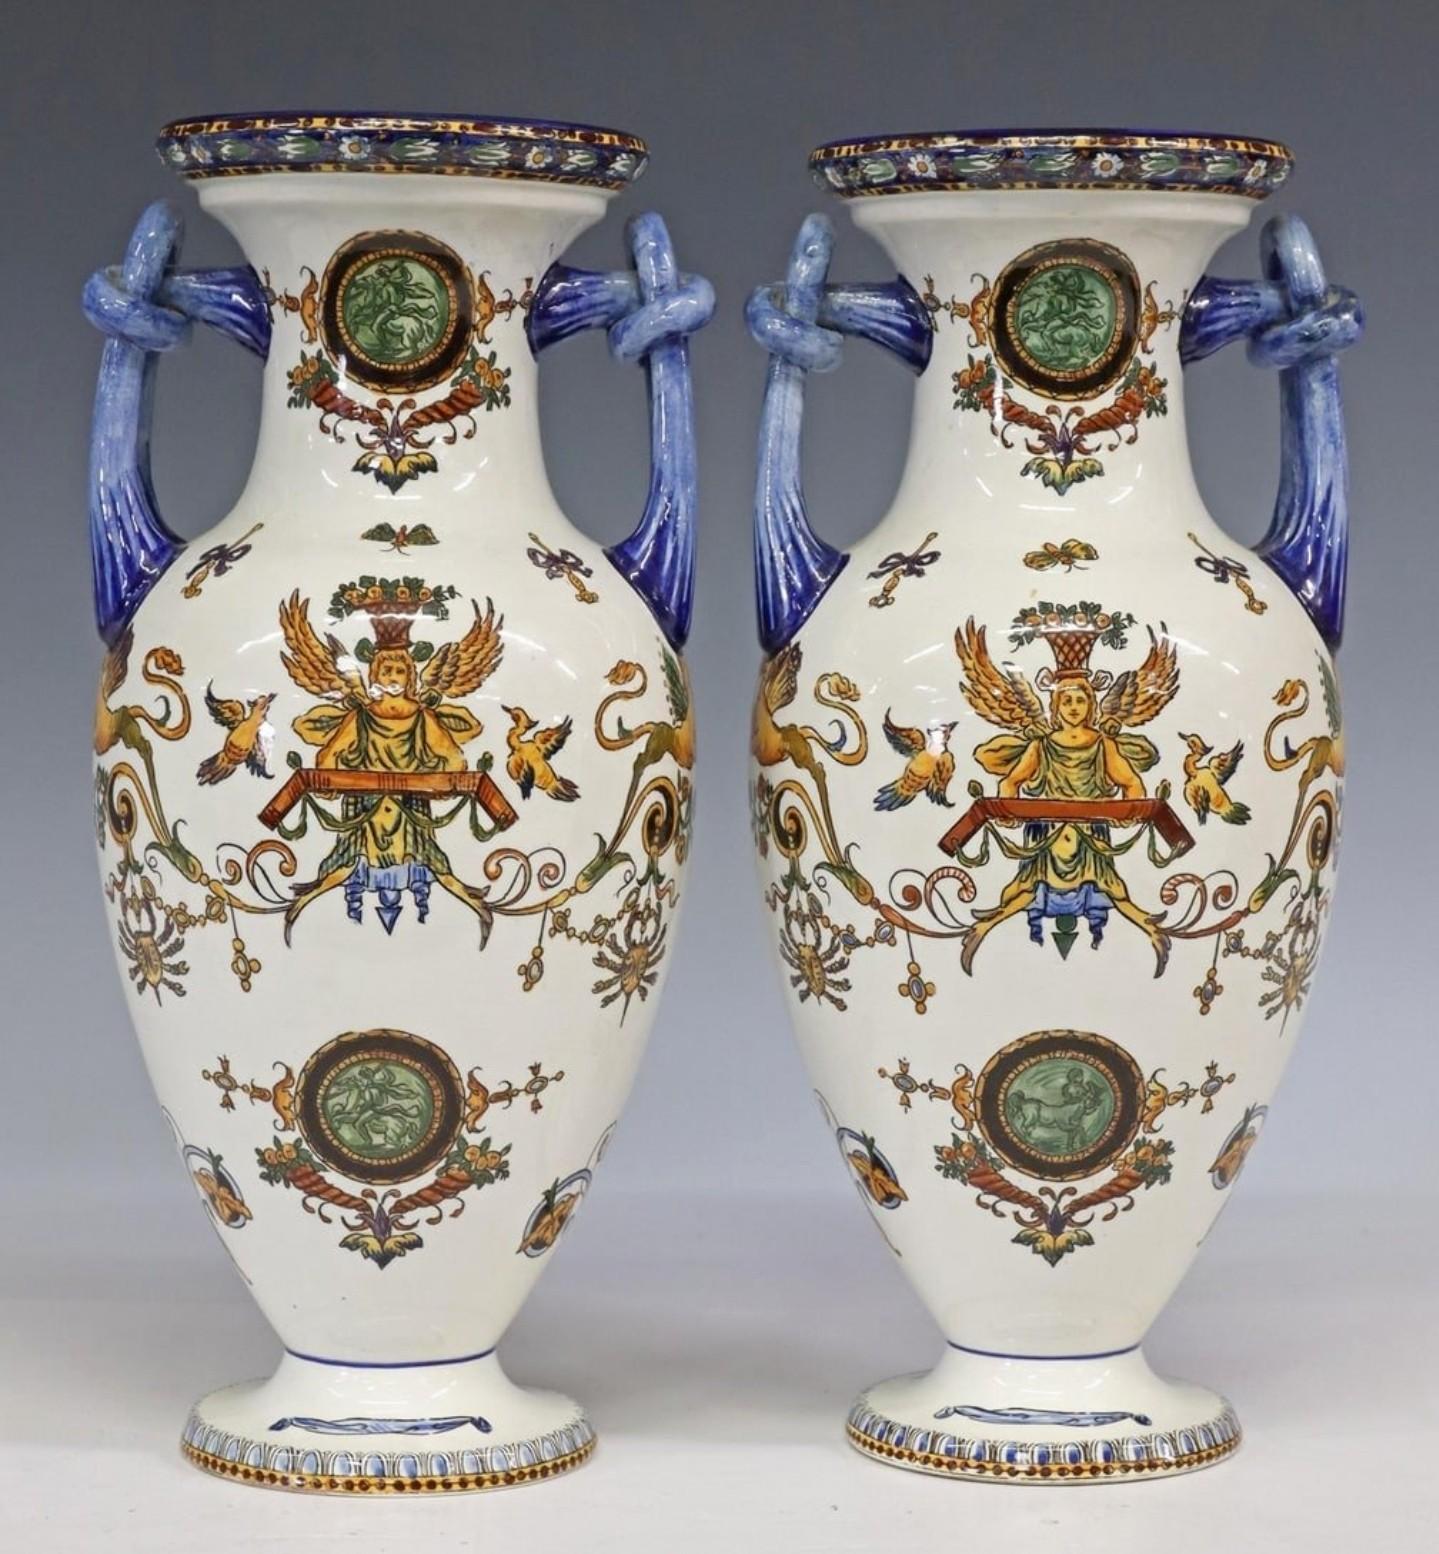 Remarquable paire de vases en faïence de la Faïencerie de Gien, probablement de la fin du XIXe siècle, de forme amphore balustre évasée à double anse, richement détaillés, avec une fine décoration peinte à la main dans le style classique de la